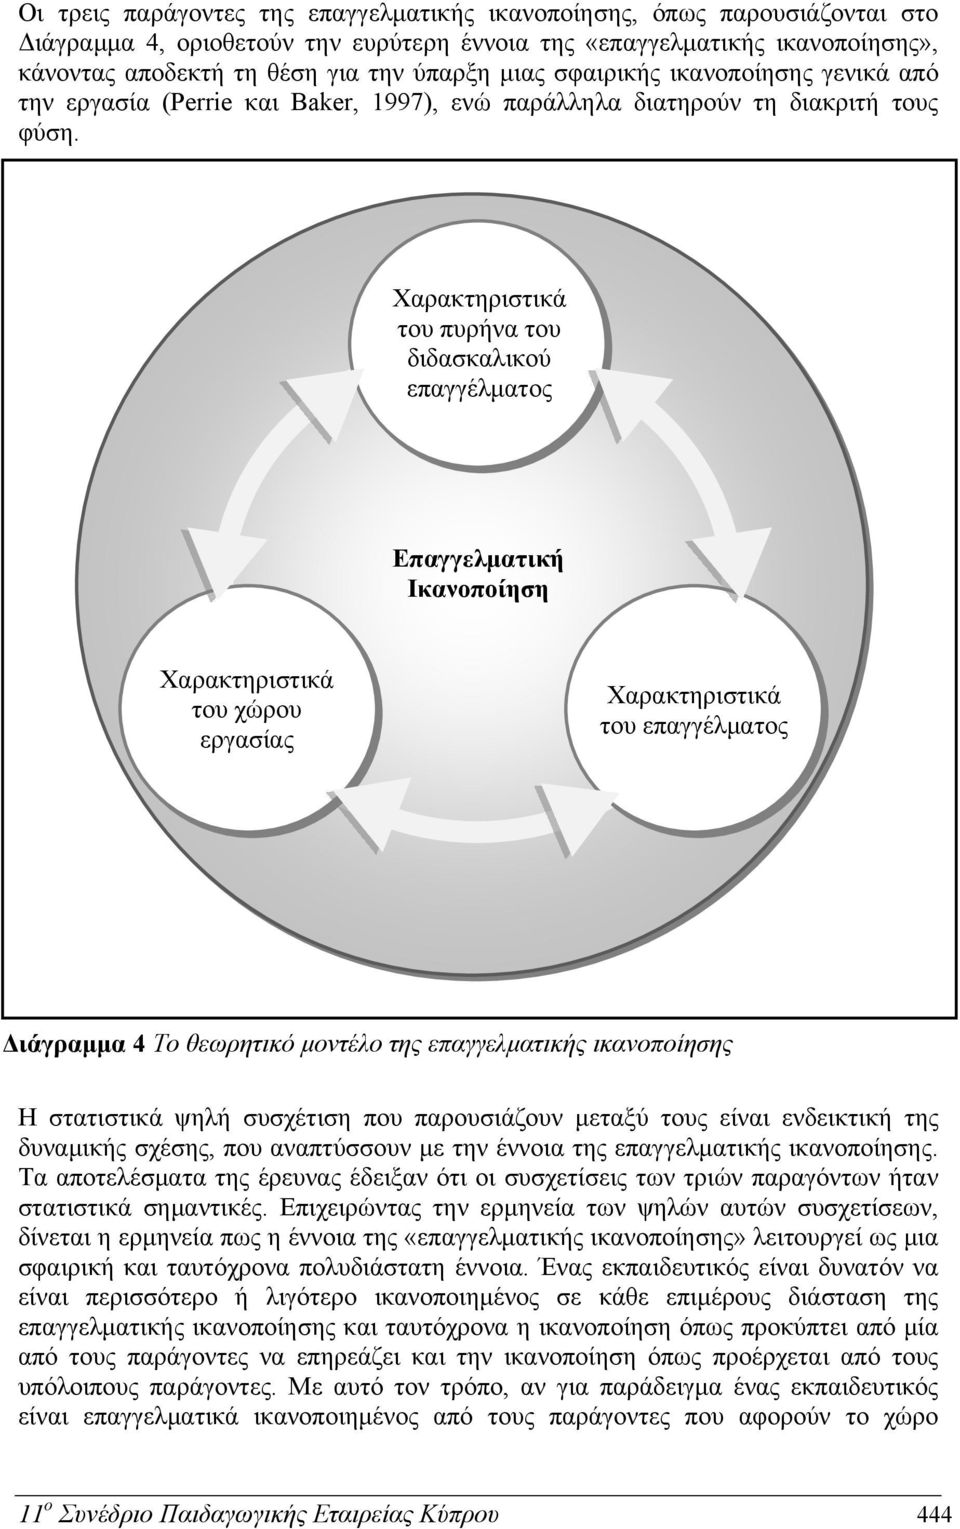 Χαρακτηριστικά του πυρήνα του διδασκαλικού επαγγέλματος Επαγγελματική Ικανοποίηση Χαρακτηριστικά του χώρου εργασίας Χαρακτηριστικά του επαγγέλματος Διάγραμμα 4 Το θεωρητικό μοντέλο της επαγγελματικής